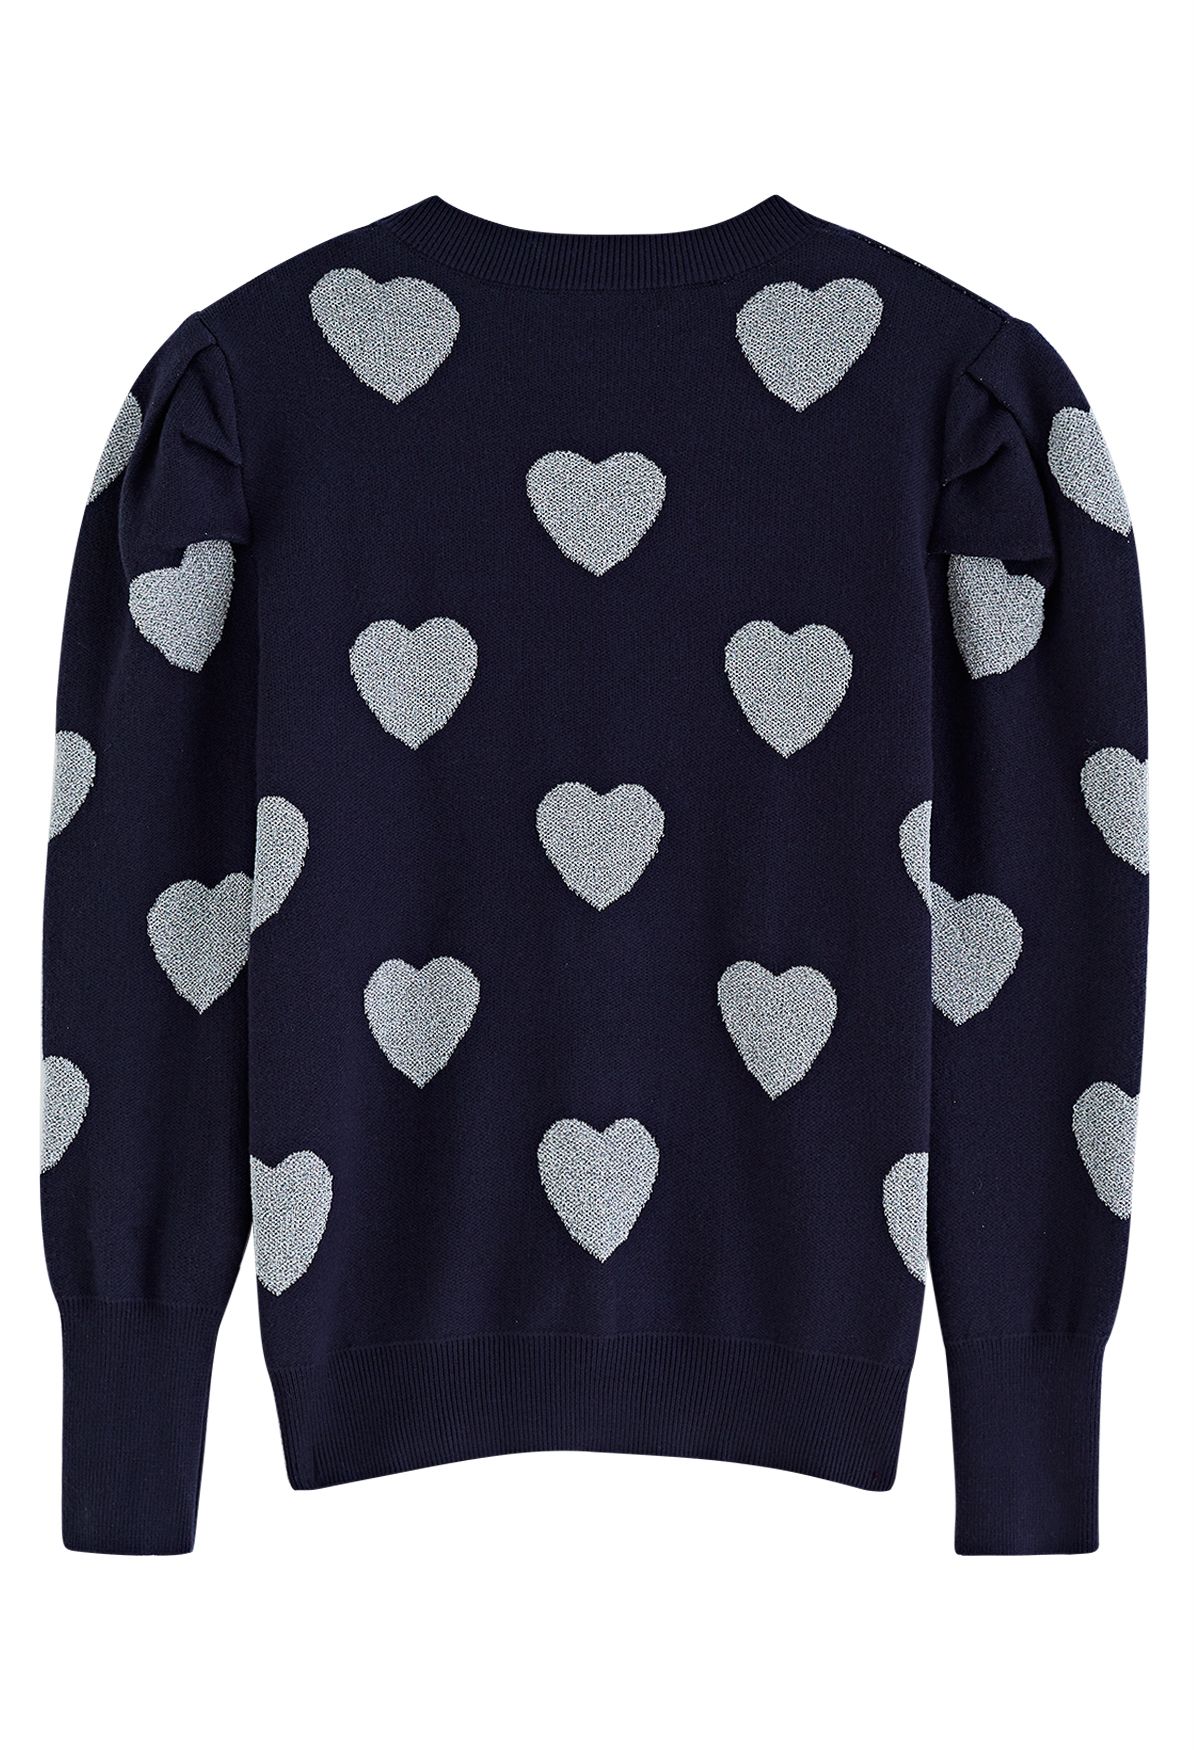 Suéter de punto con hombros abullonados y corazones metálicos en azul marino